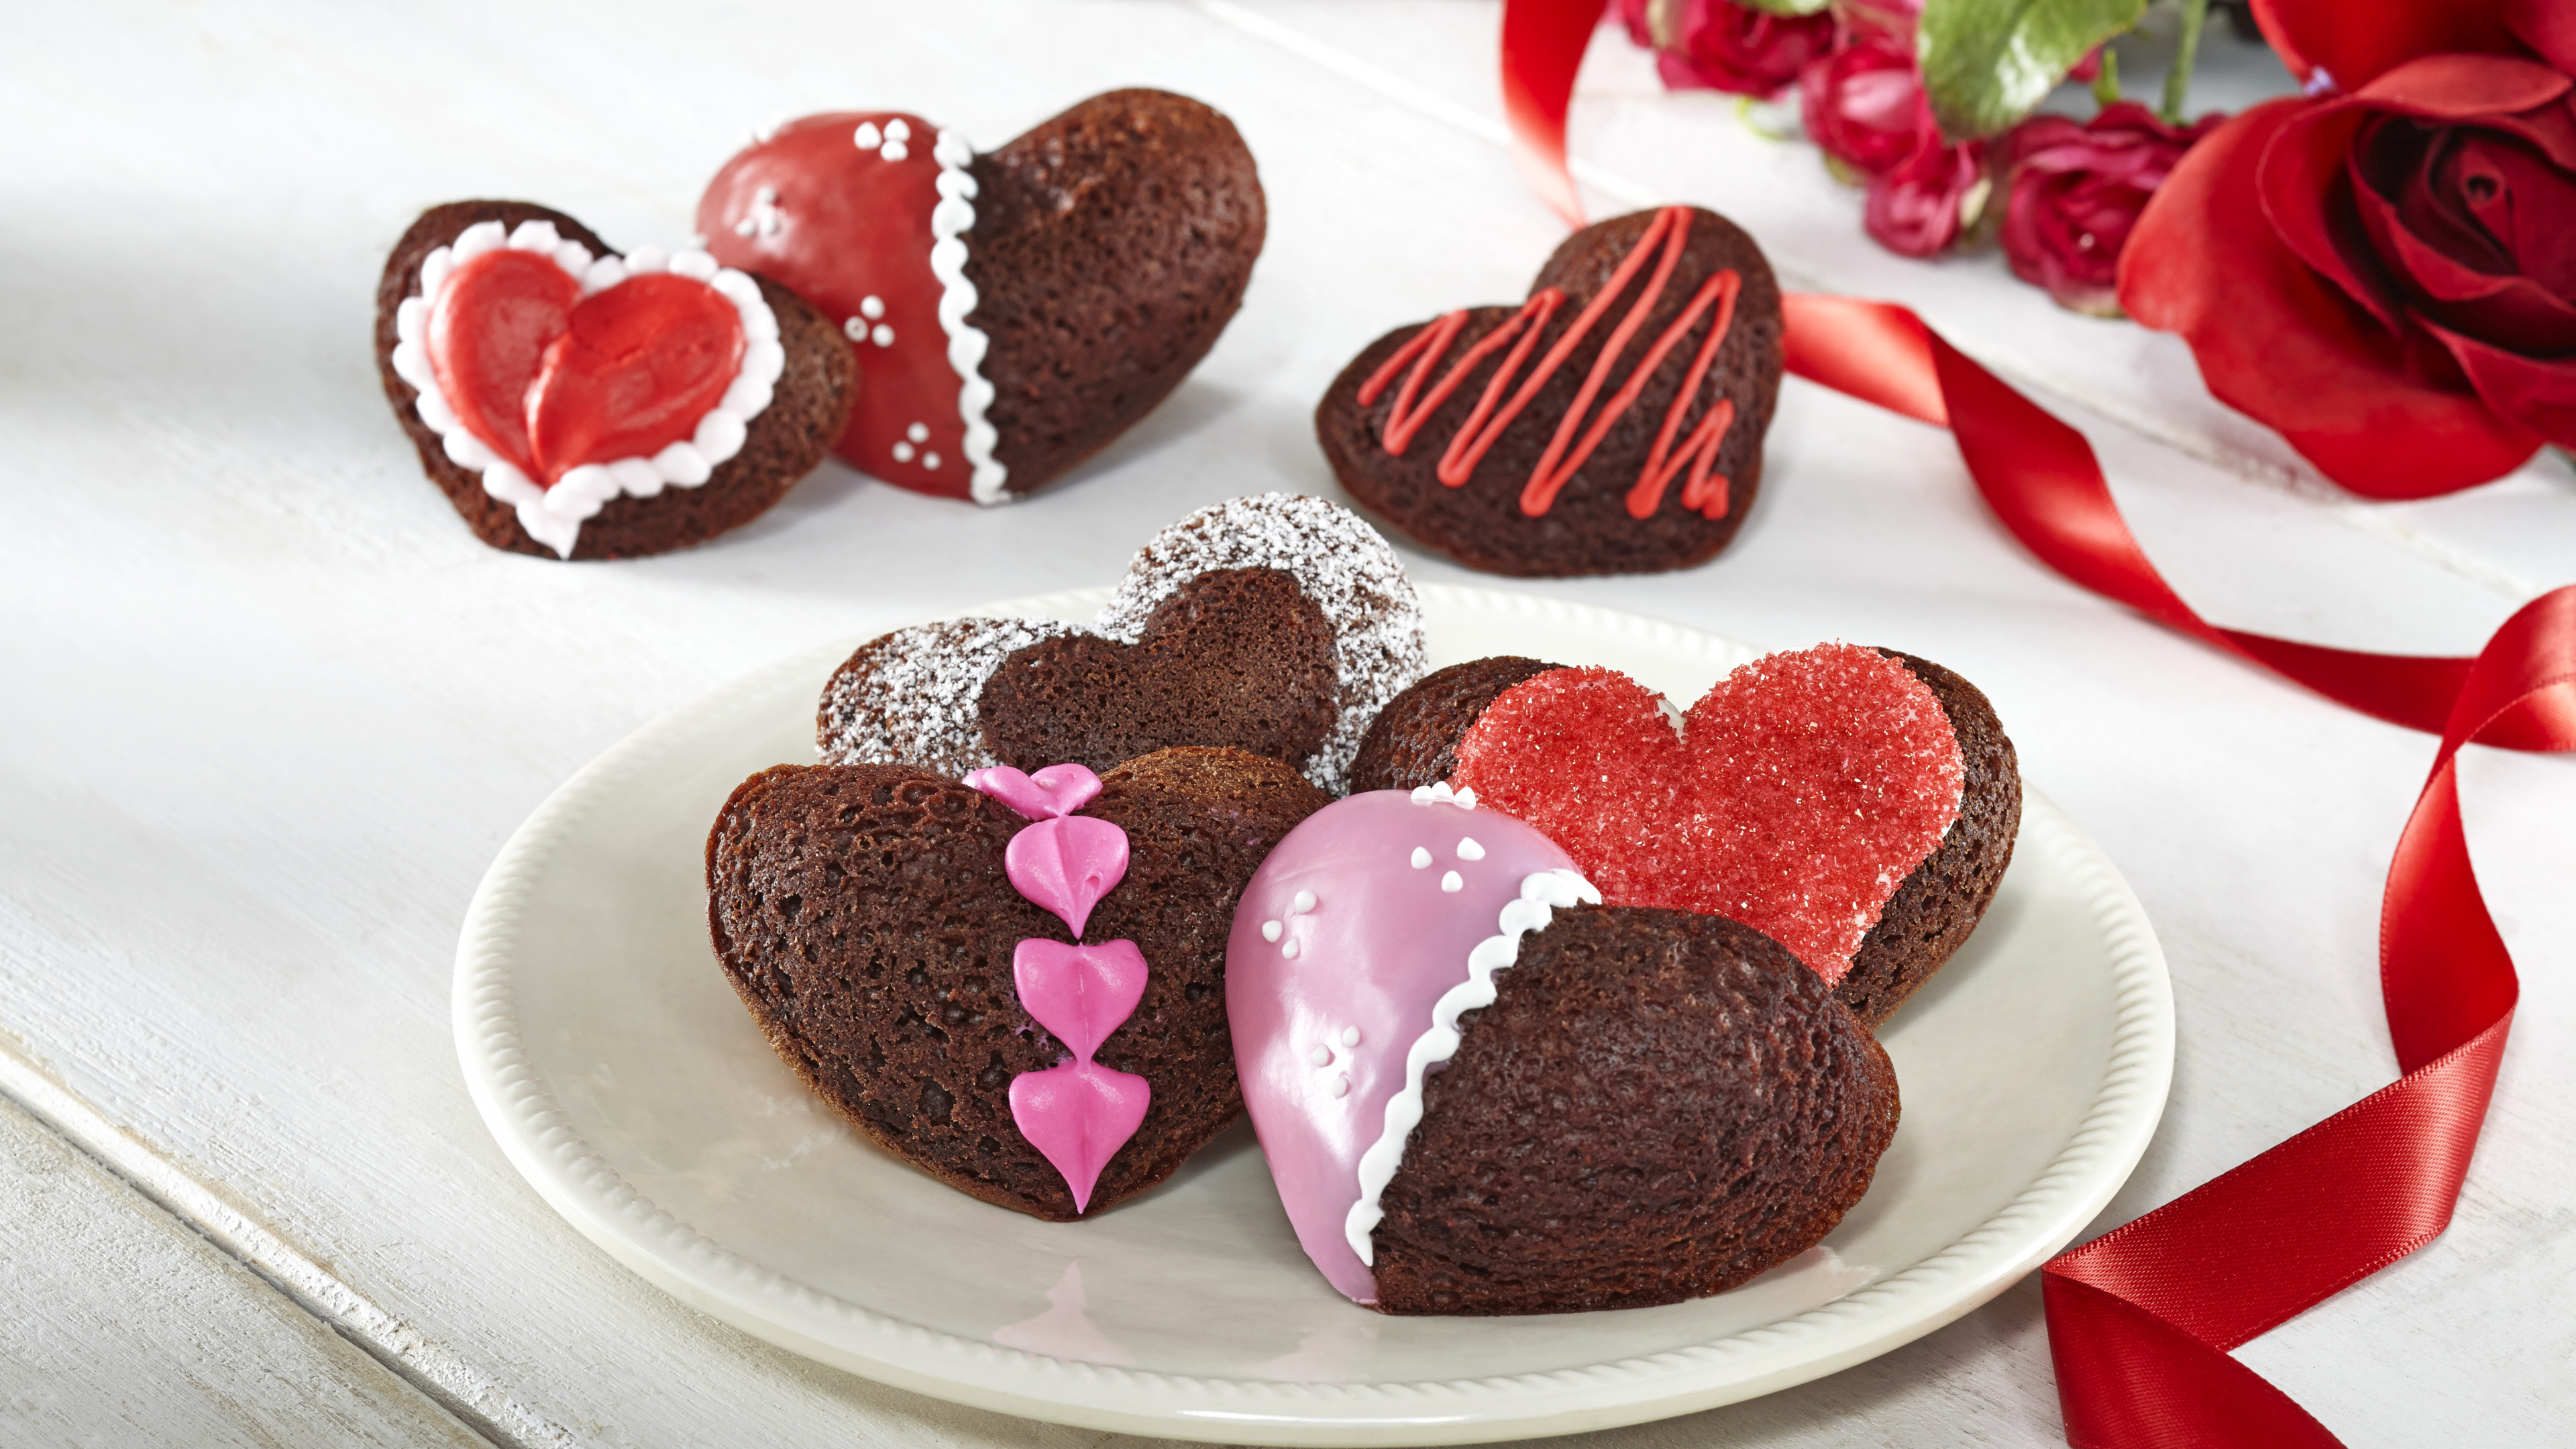 Gâteau au Chocolat, Dessert, le Jour de Valentines, Chocolat, Aliment. Wallpaper in 3840x2160 Resolution